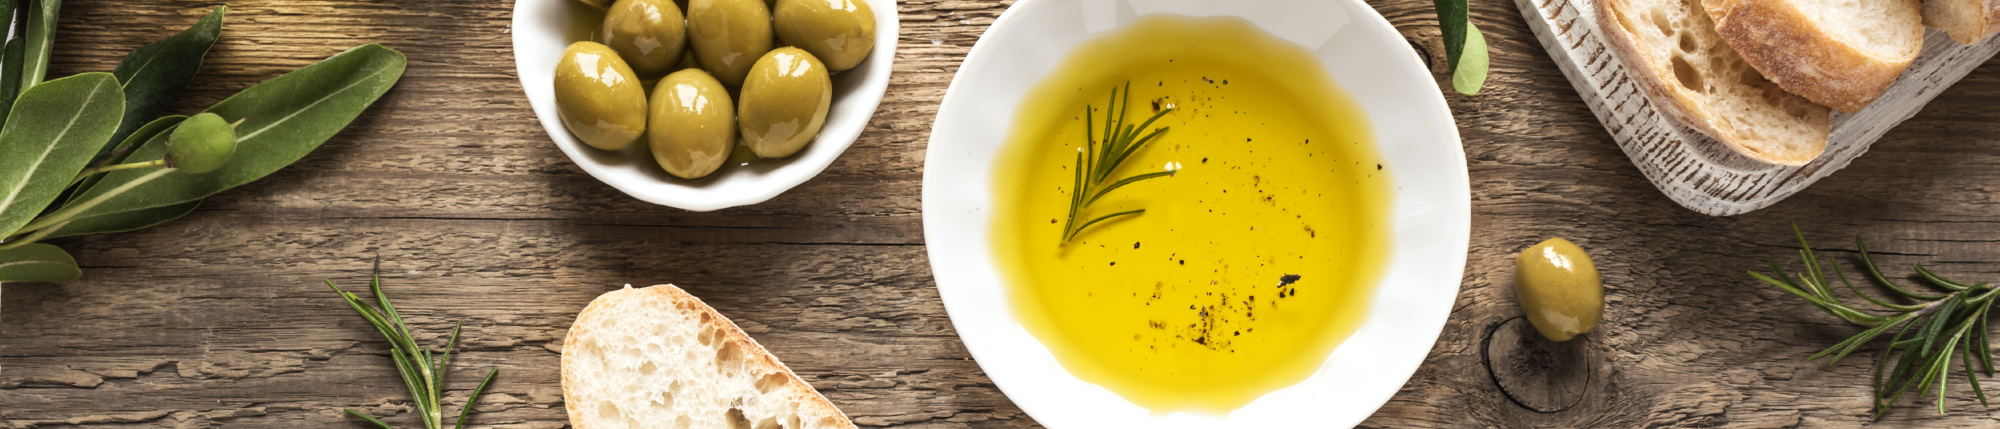 Huile d'Olive Extra Vierge: achetez maintenant à des prix imbattables